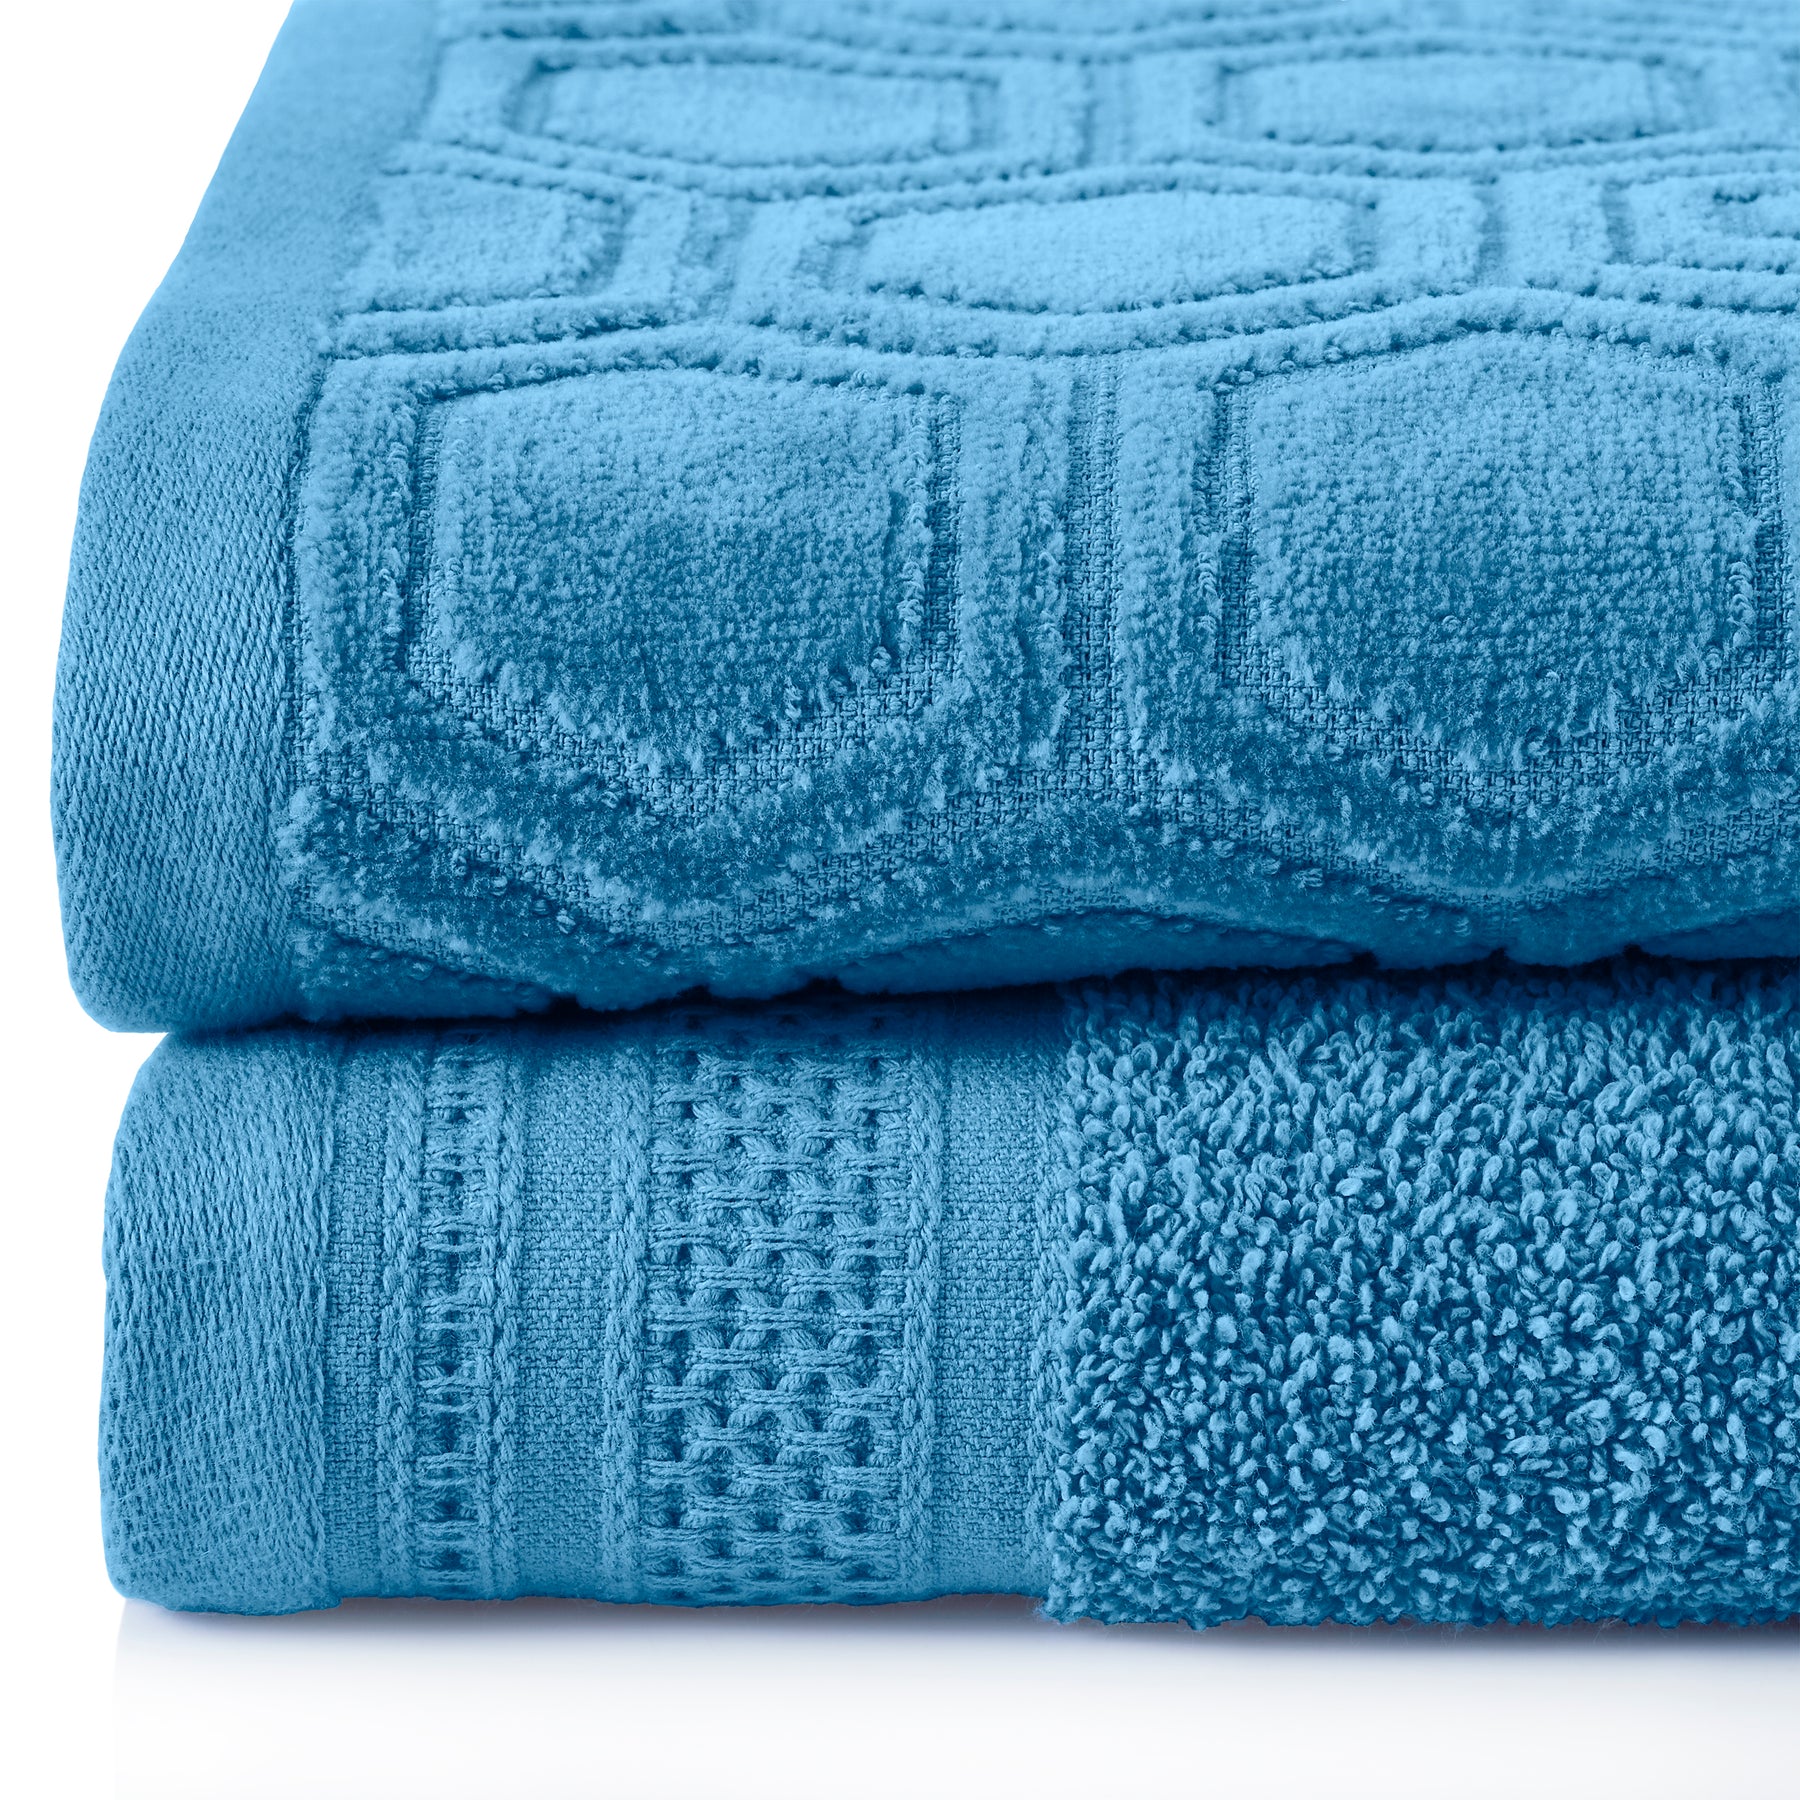 Honeycomb Jacquard 12-Piece Cotton Velour Bath Towel Set - Azure